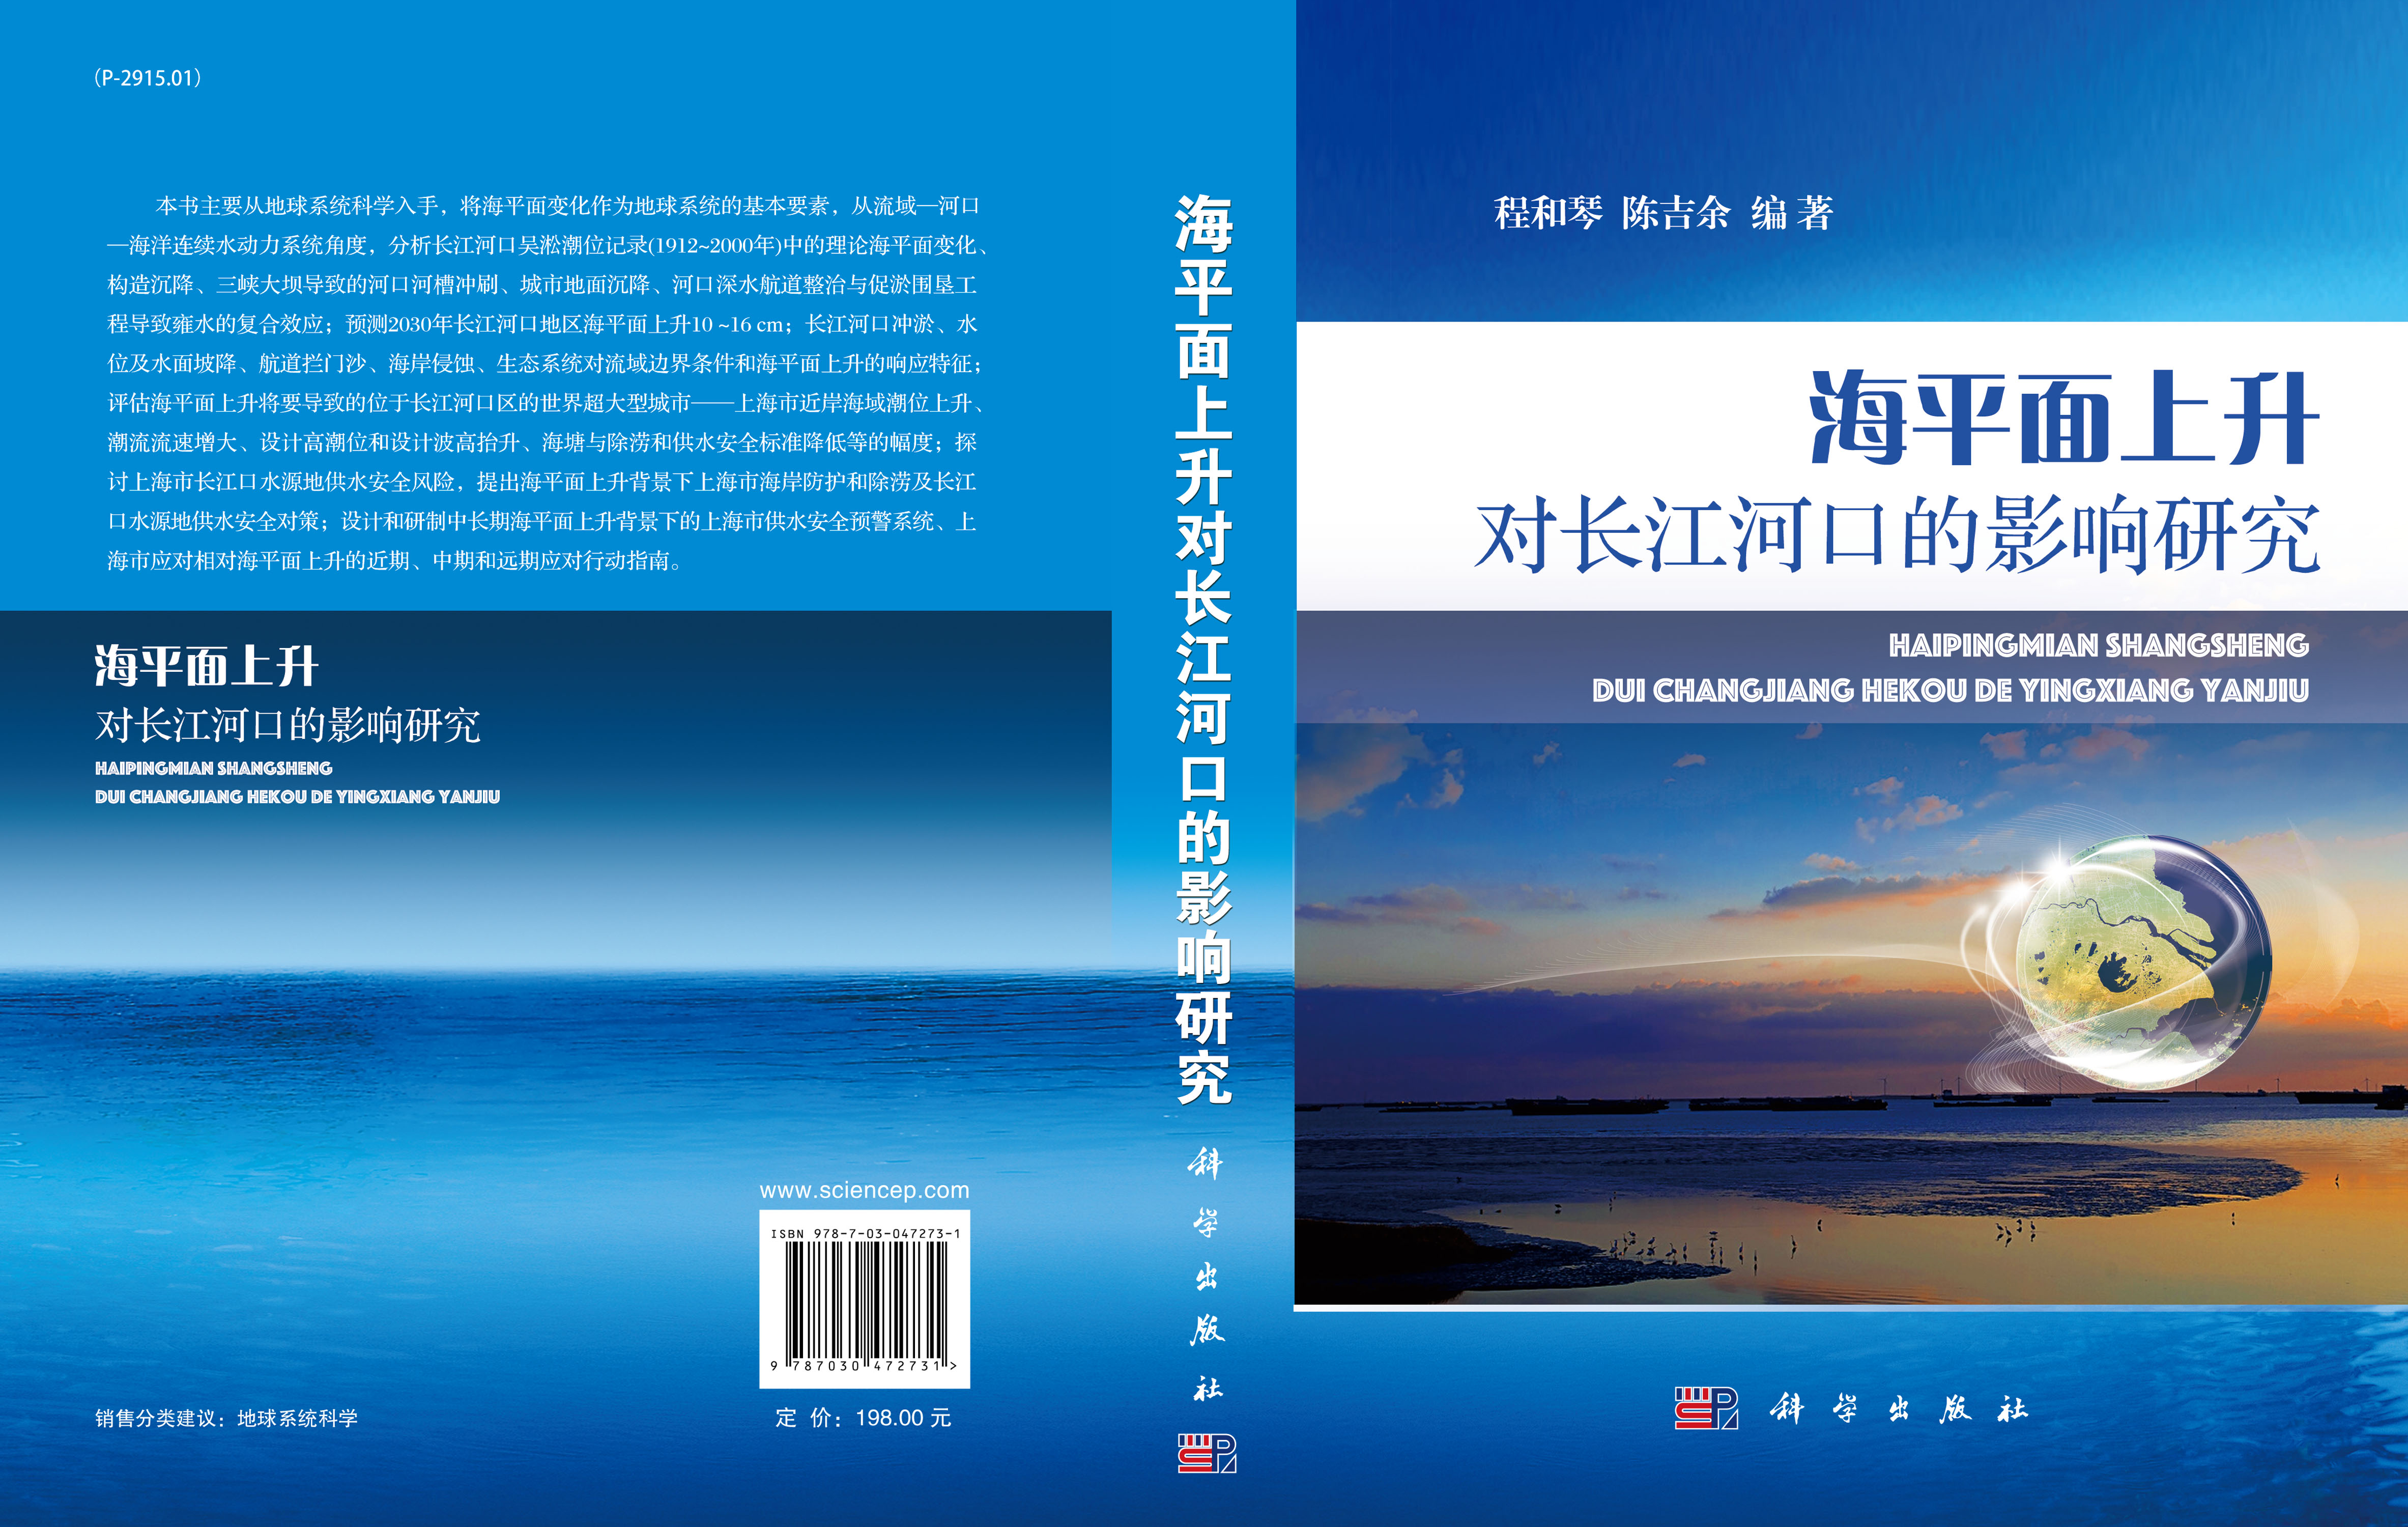 海平面上升对长江河口的影响研究